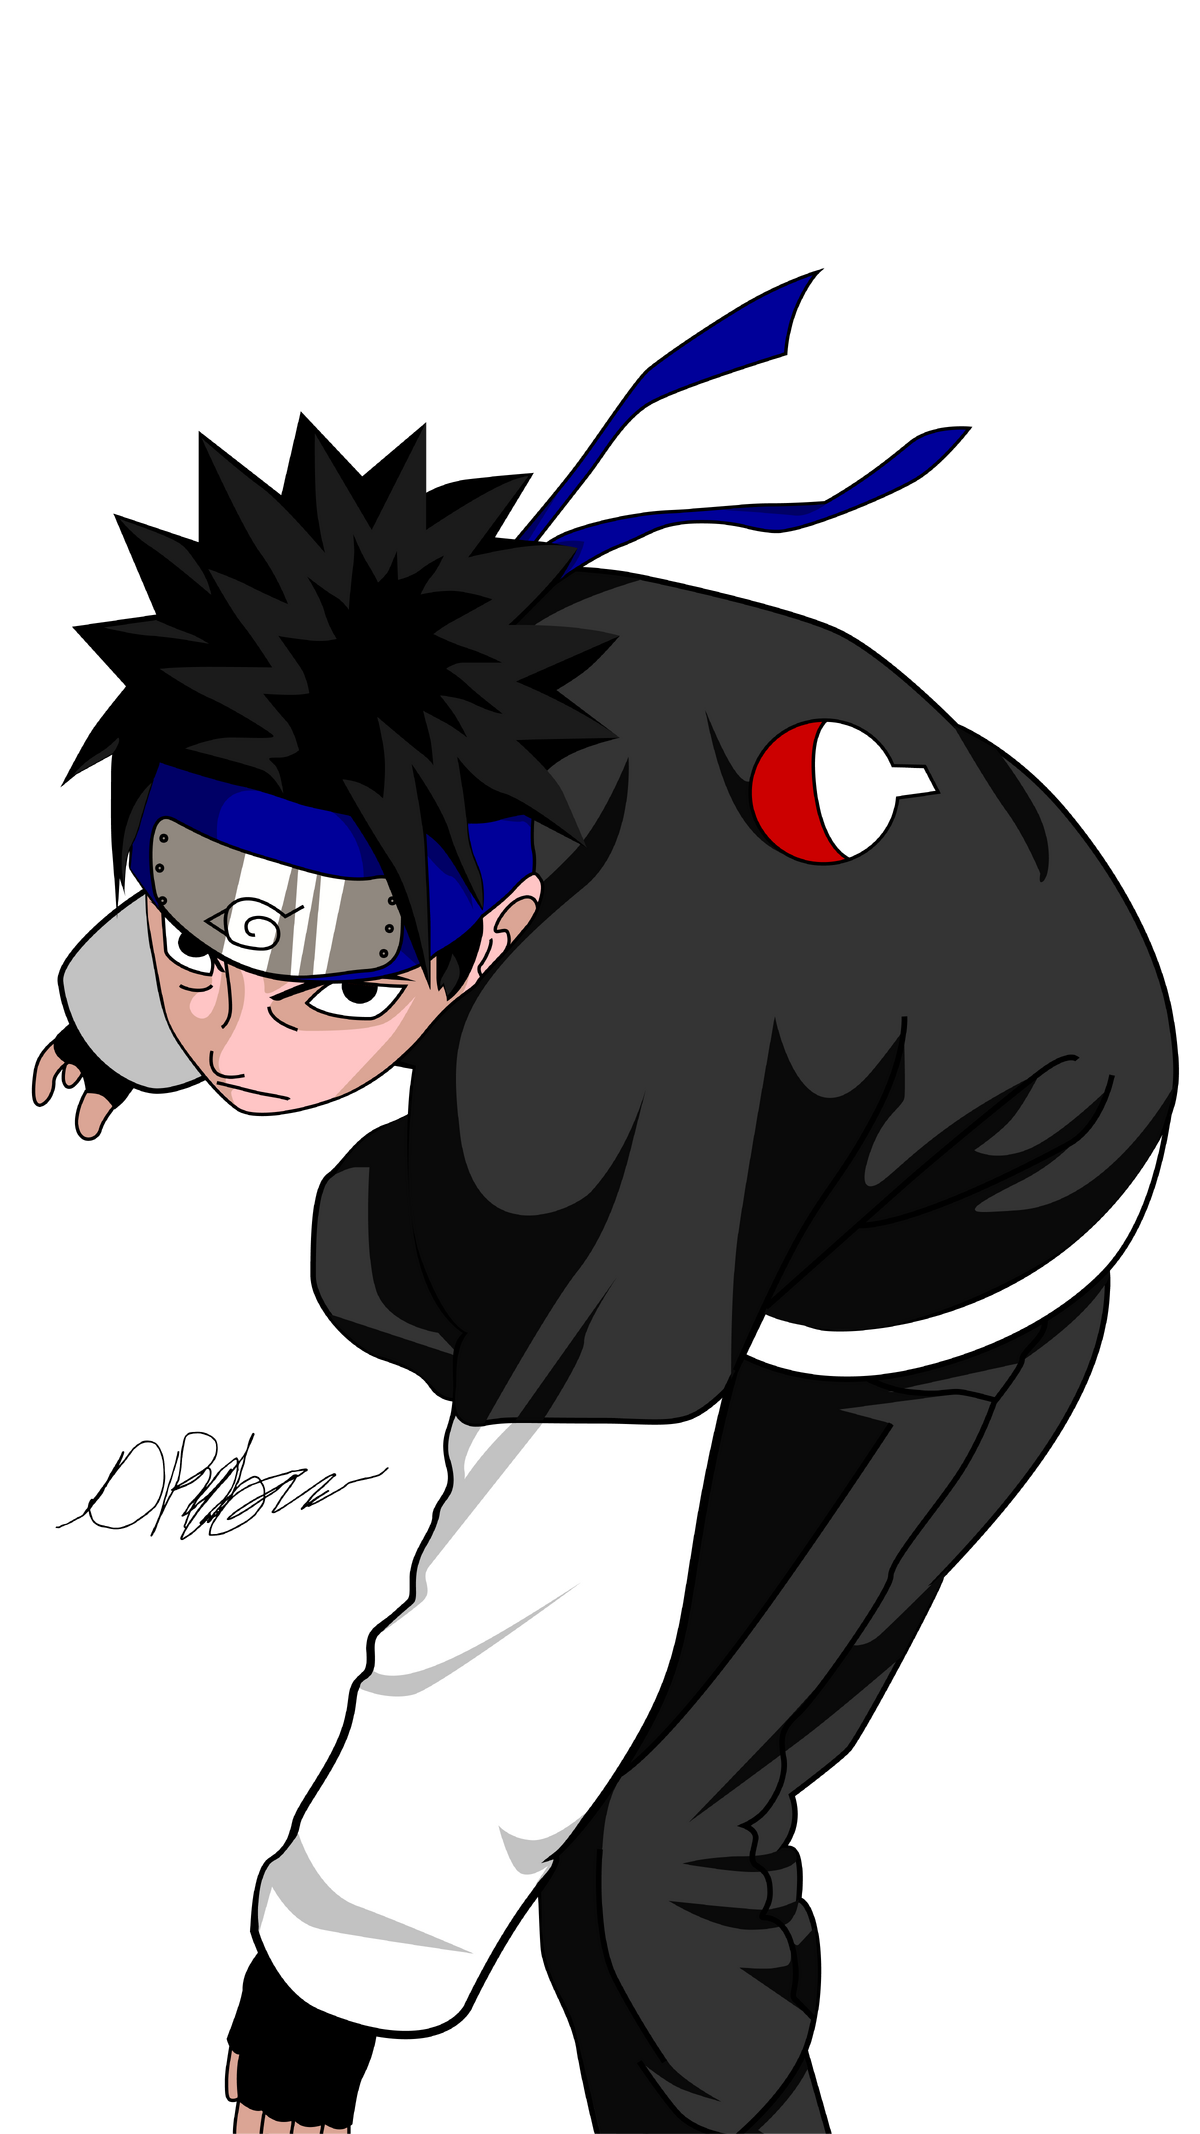 Naruto Uzumaki - Uchiha shisui was one of the very few Mangekyo